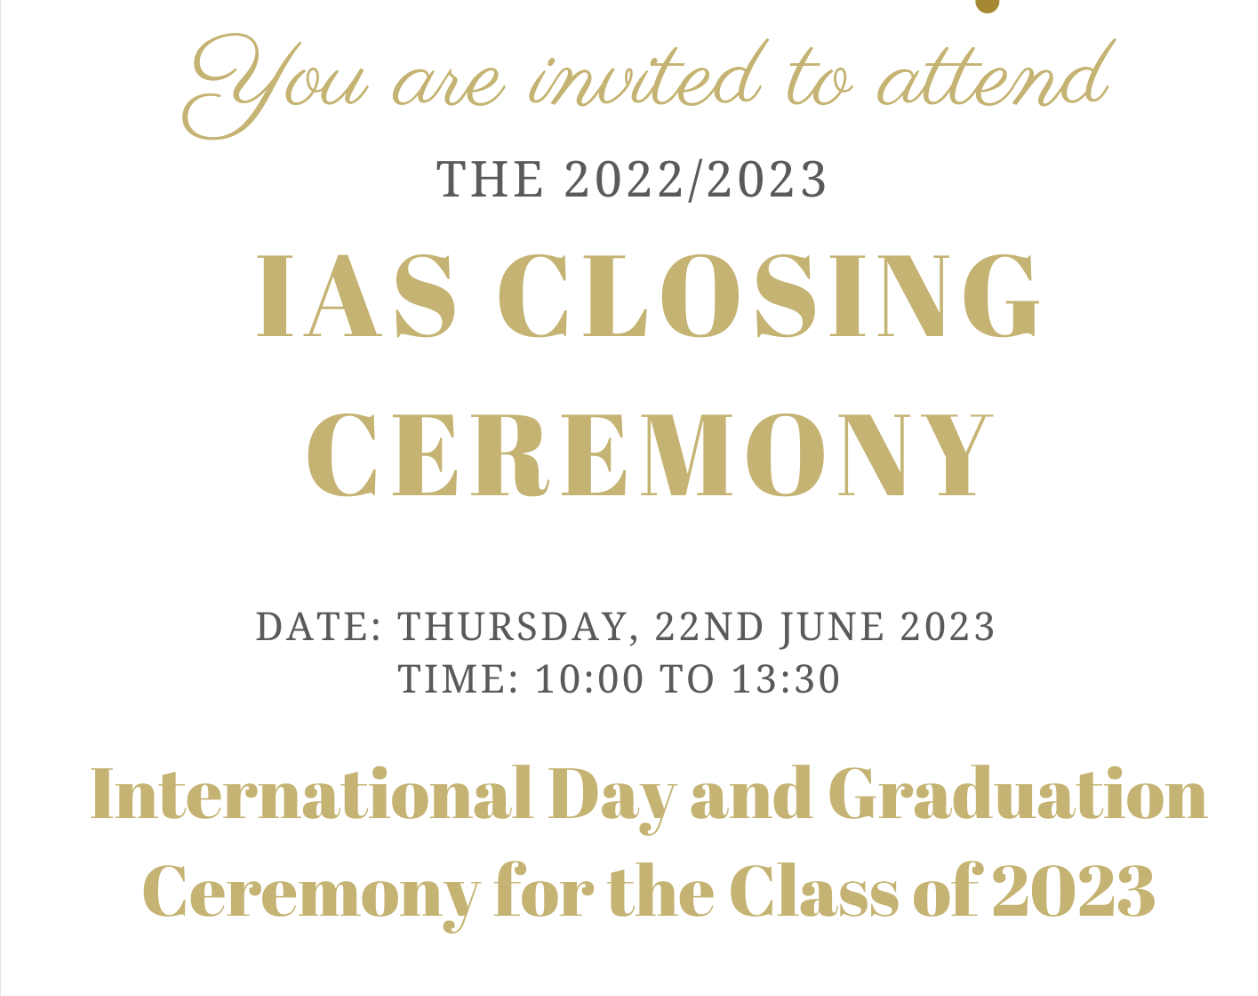 IAS Closing Ceremony 2022/2023 at POLIN || RSVP